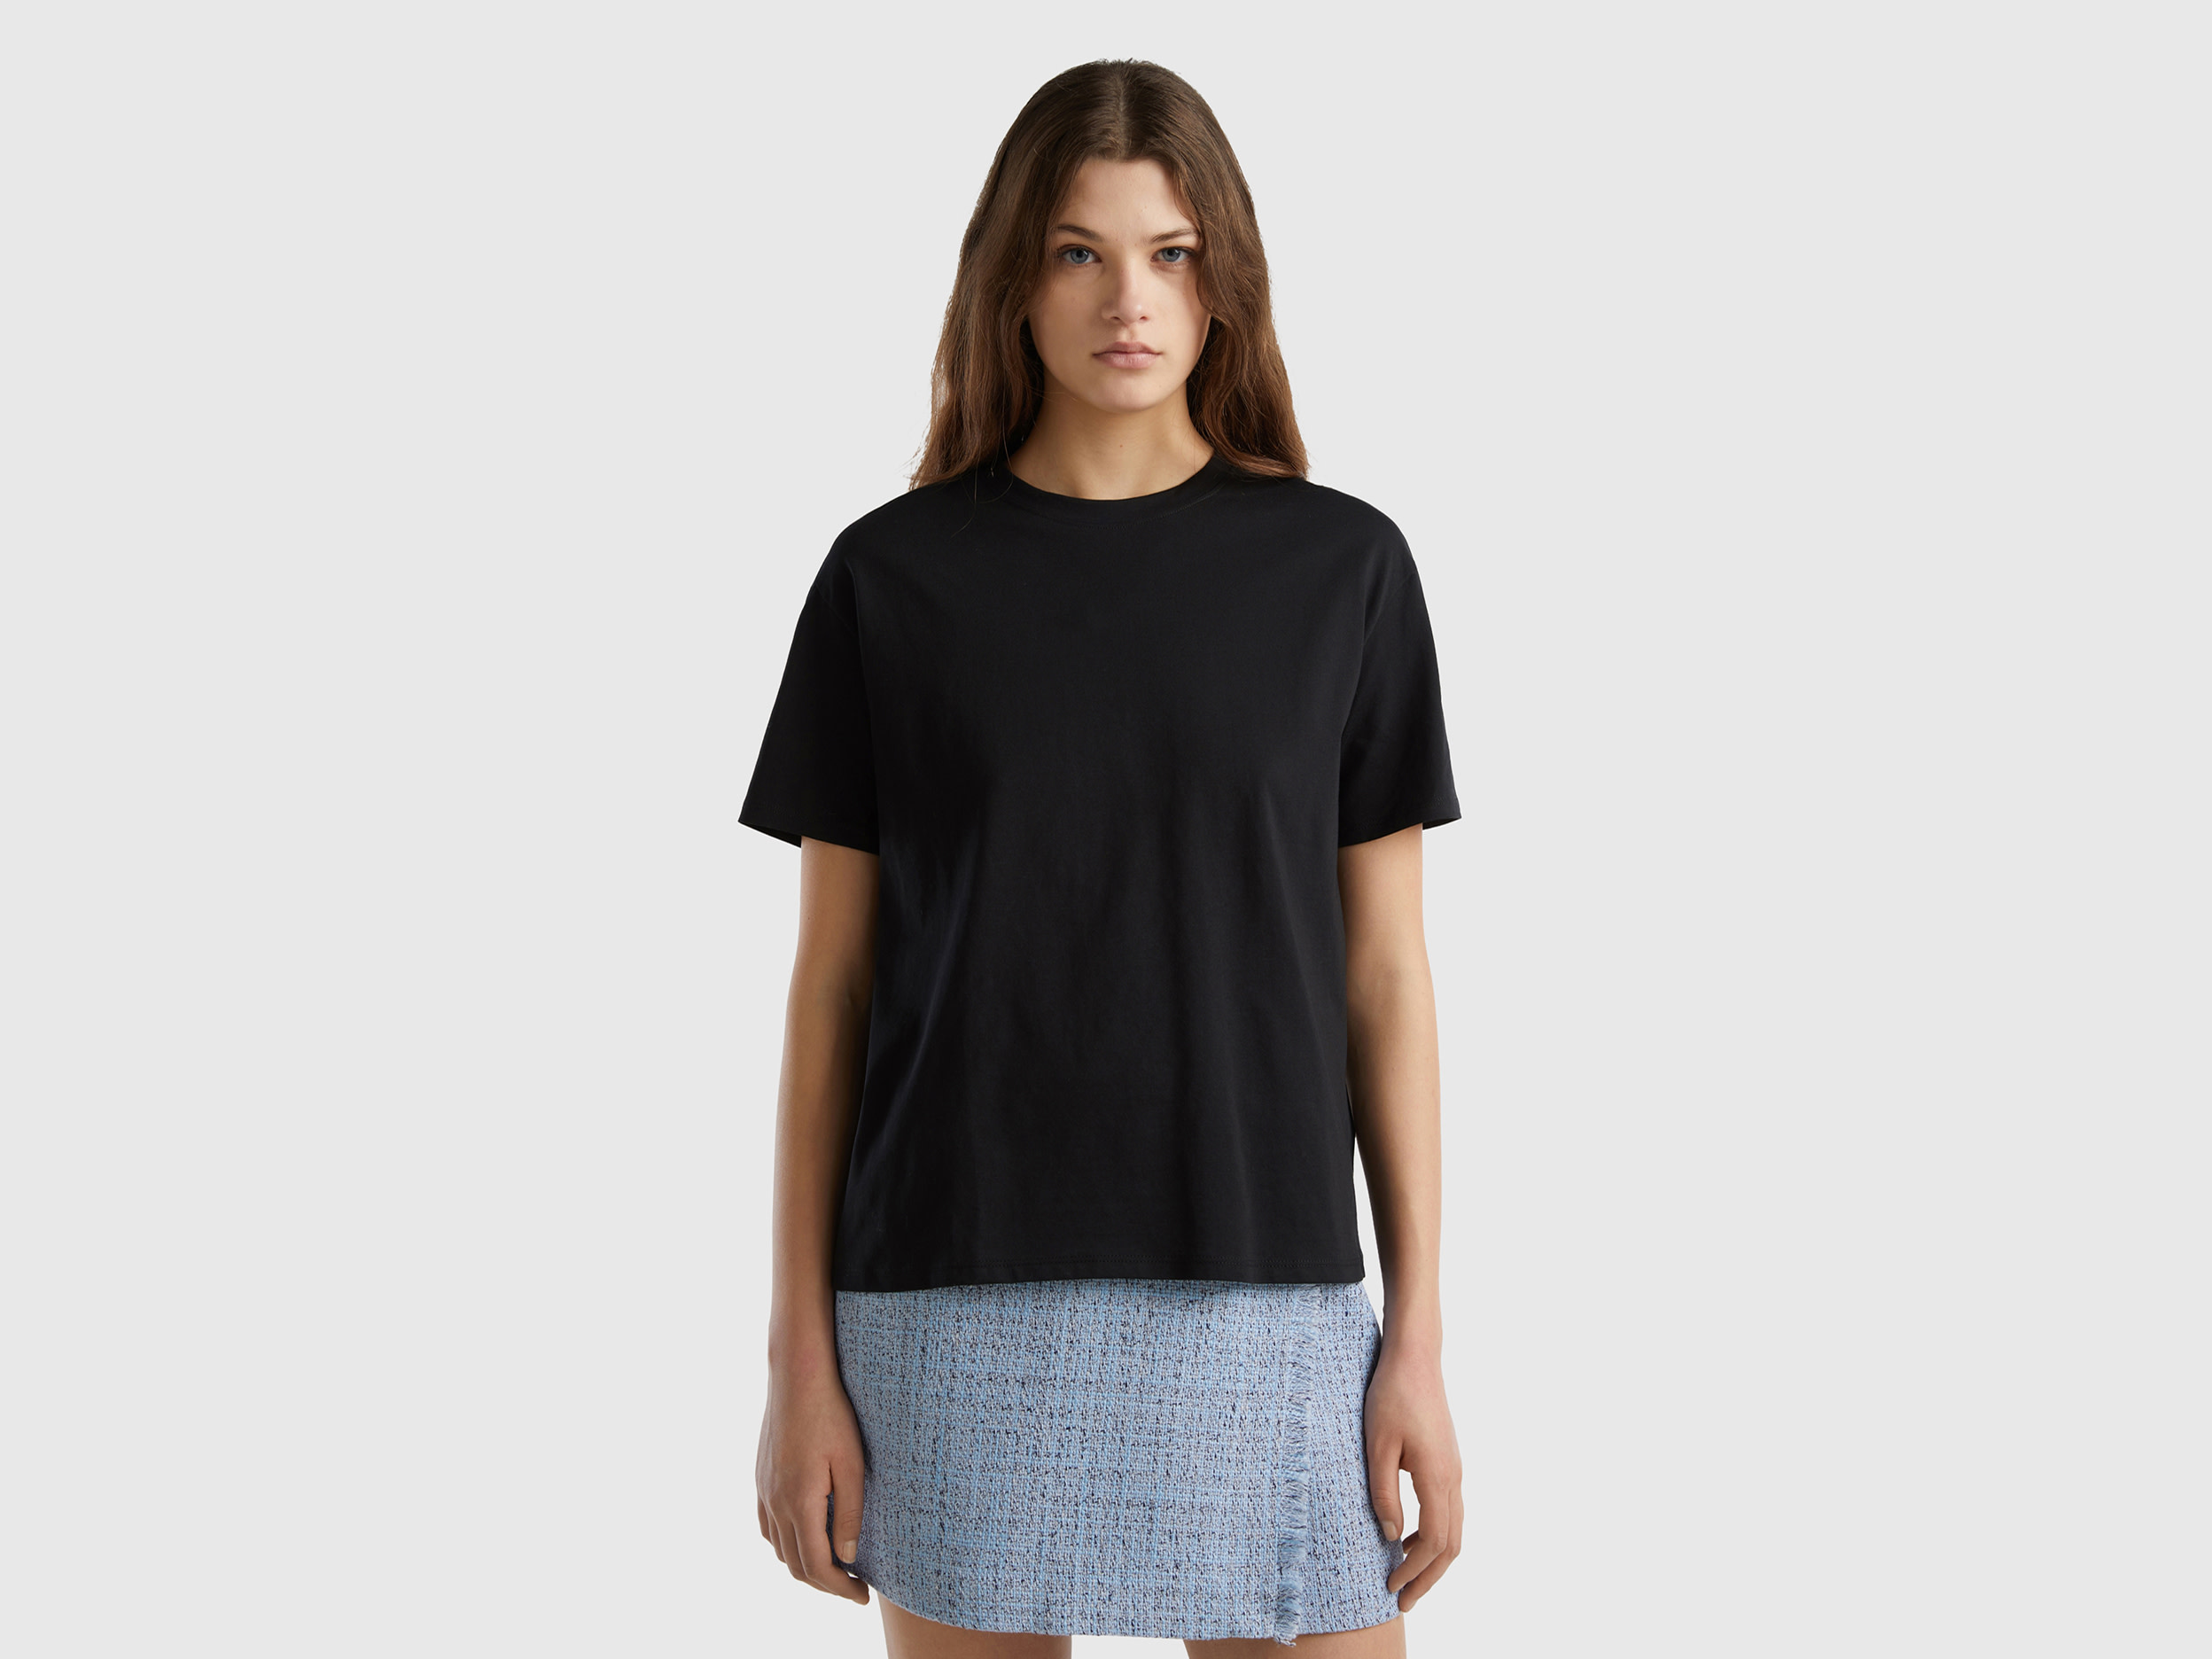 Benetton, Short Sleeve 100% Cotton T-shirt, size XL, Black, Women